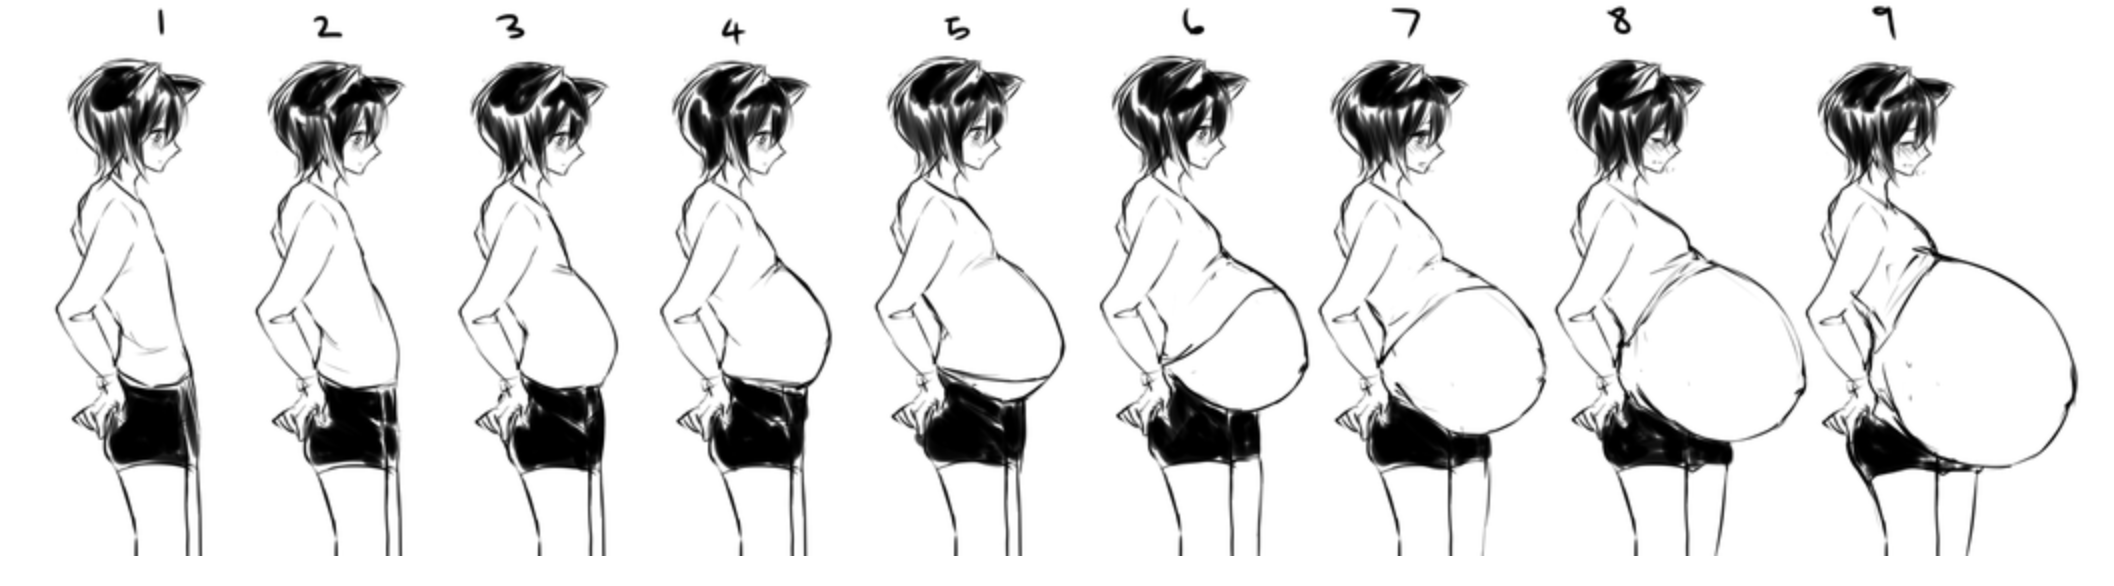 грудь при беременности растет живот фото 103